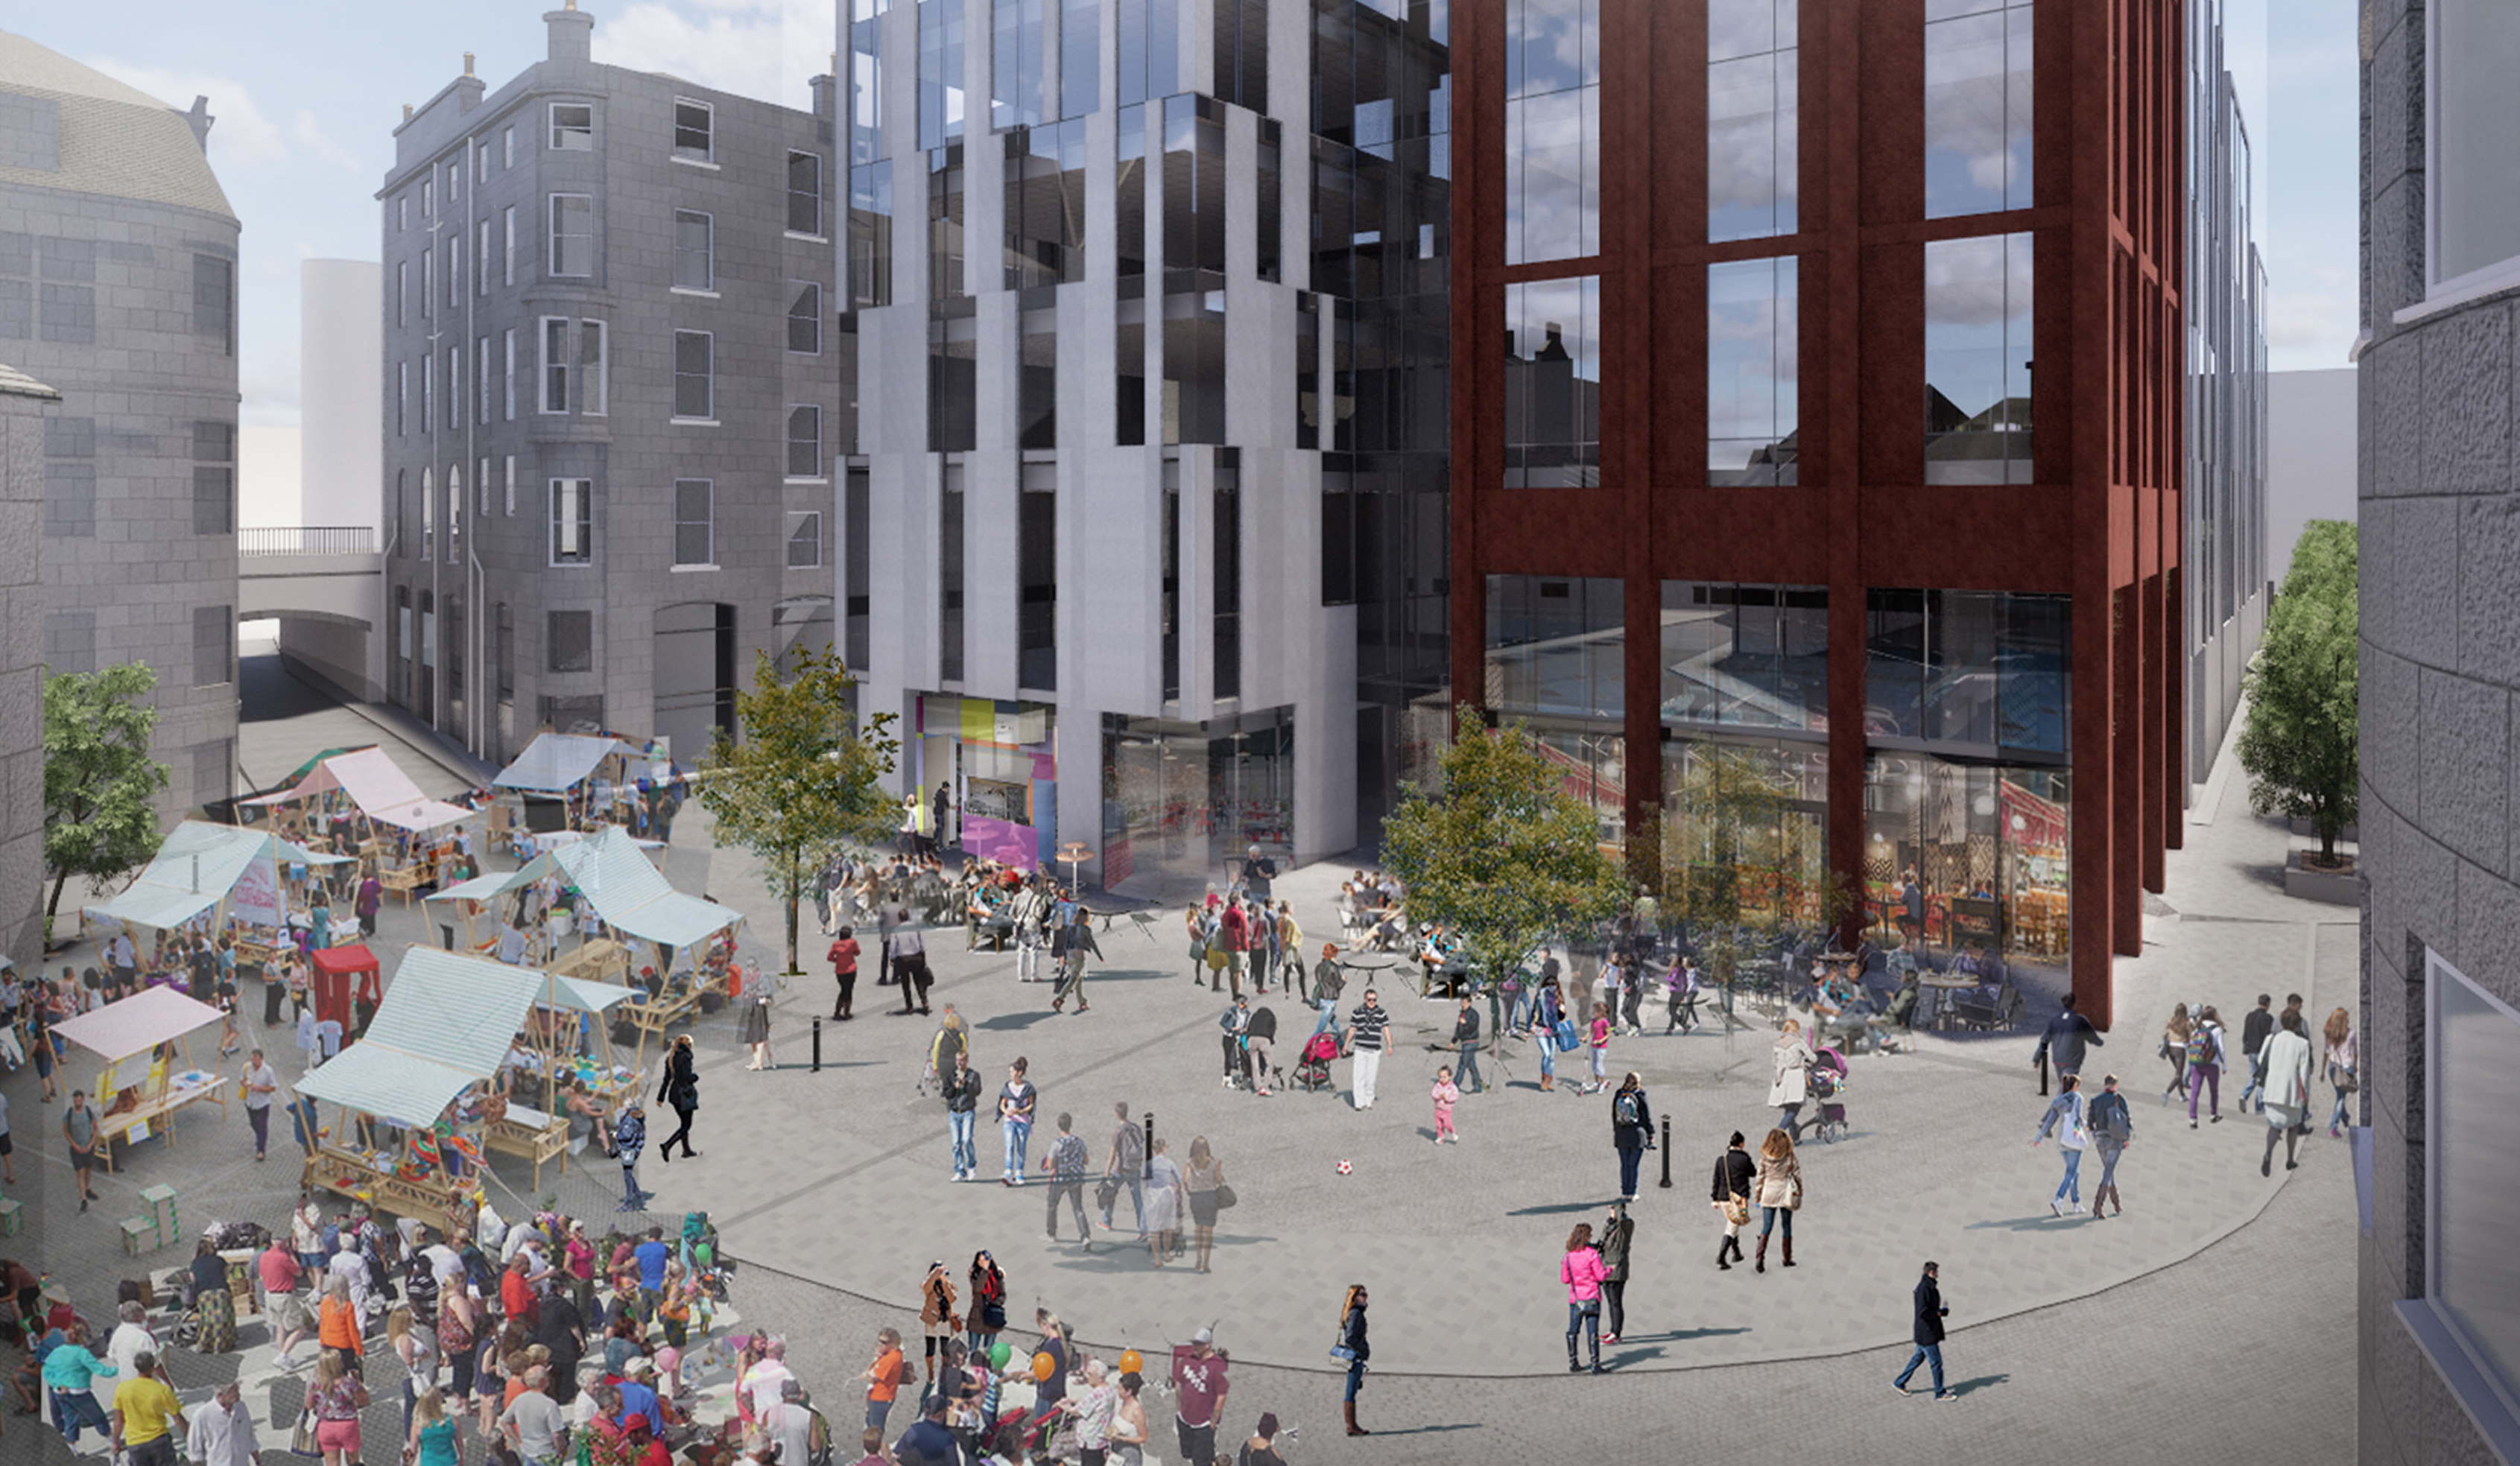 HFM submits Aberdeen Market redevelopment proposal